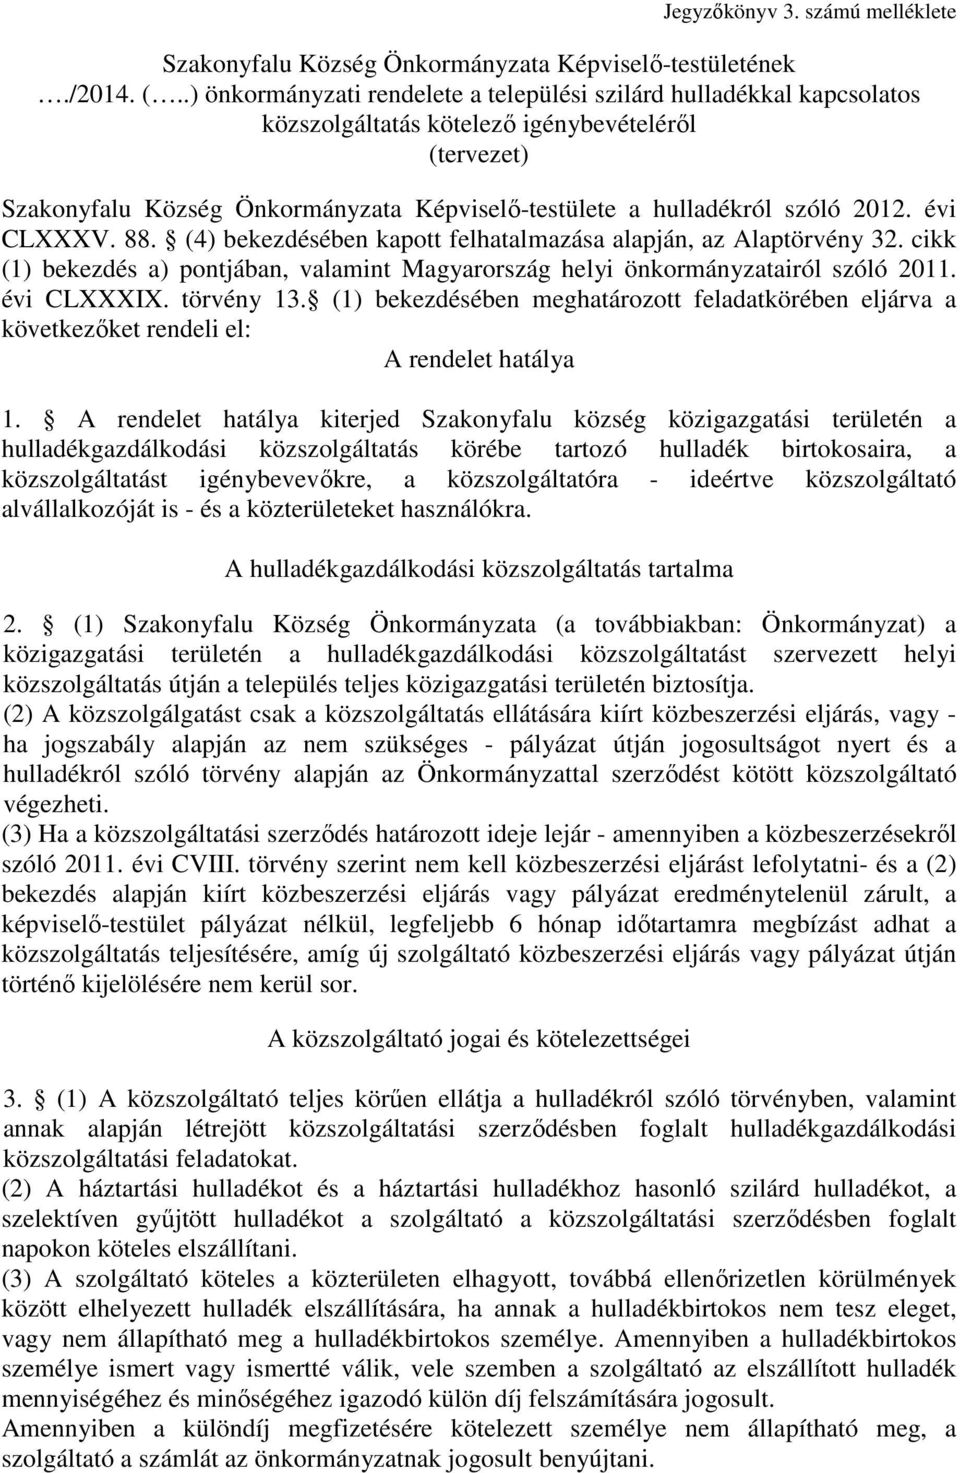 2012. évi CLXXXV. 88. (4) bekezdésében kapott felhatalmazása alapján, az Alaptörvény 32. cikk (1) bekezdés a) pontjában, valamint Magyarország helyi önkormányzatairól szóló 2011. évi CLXXXIX.